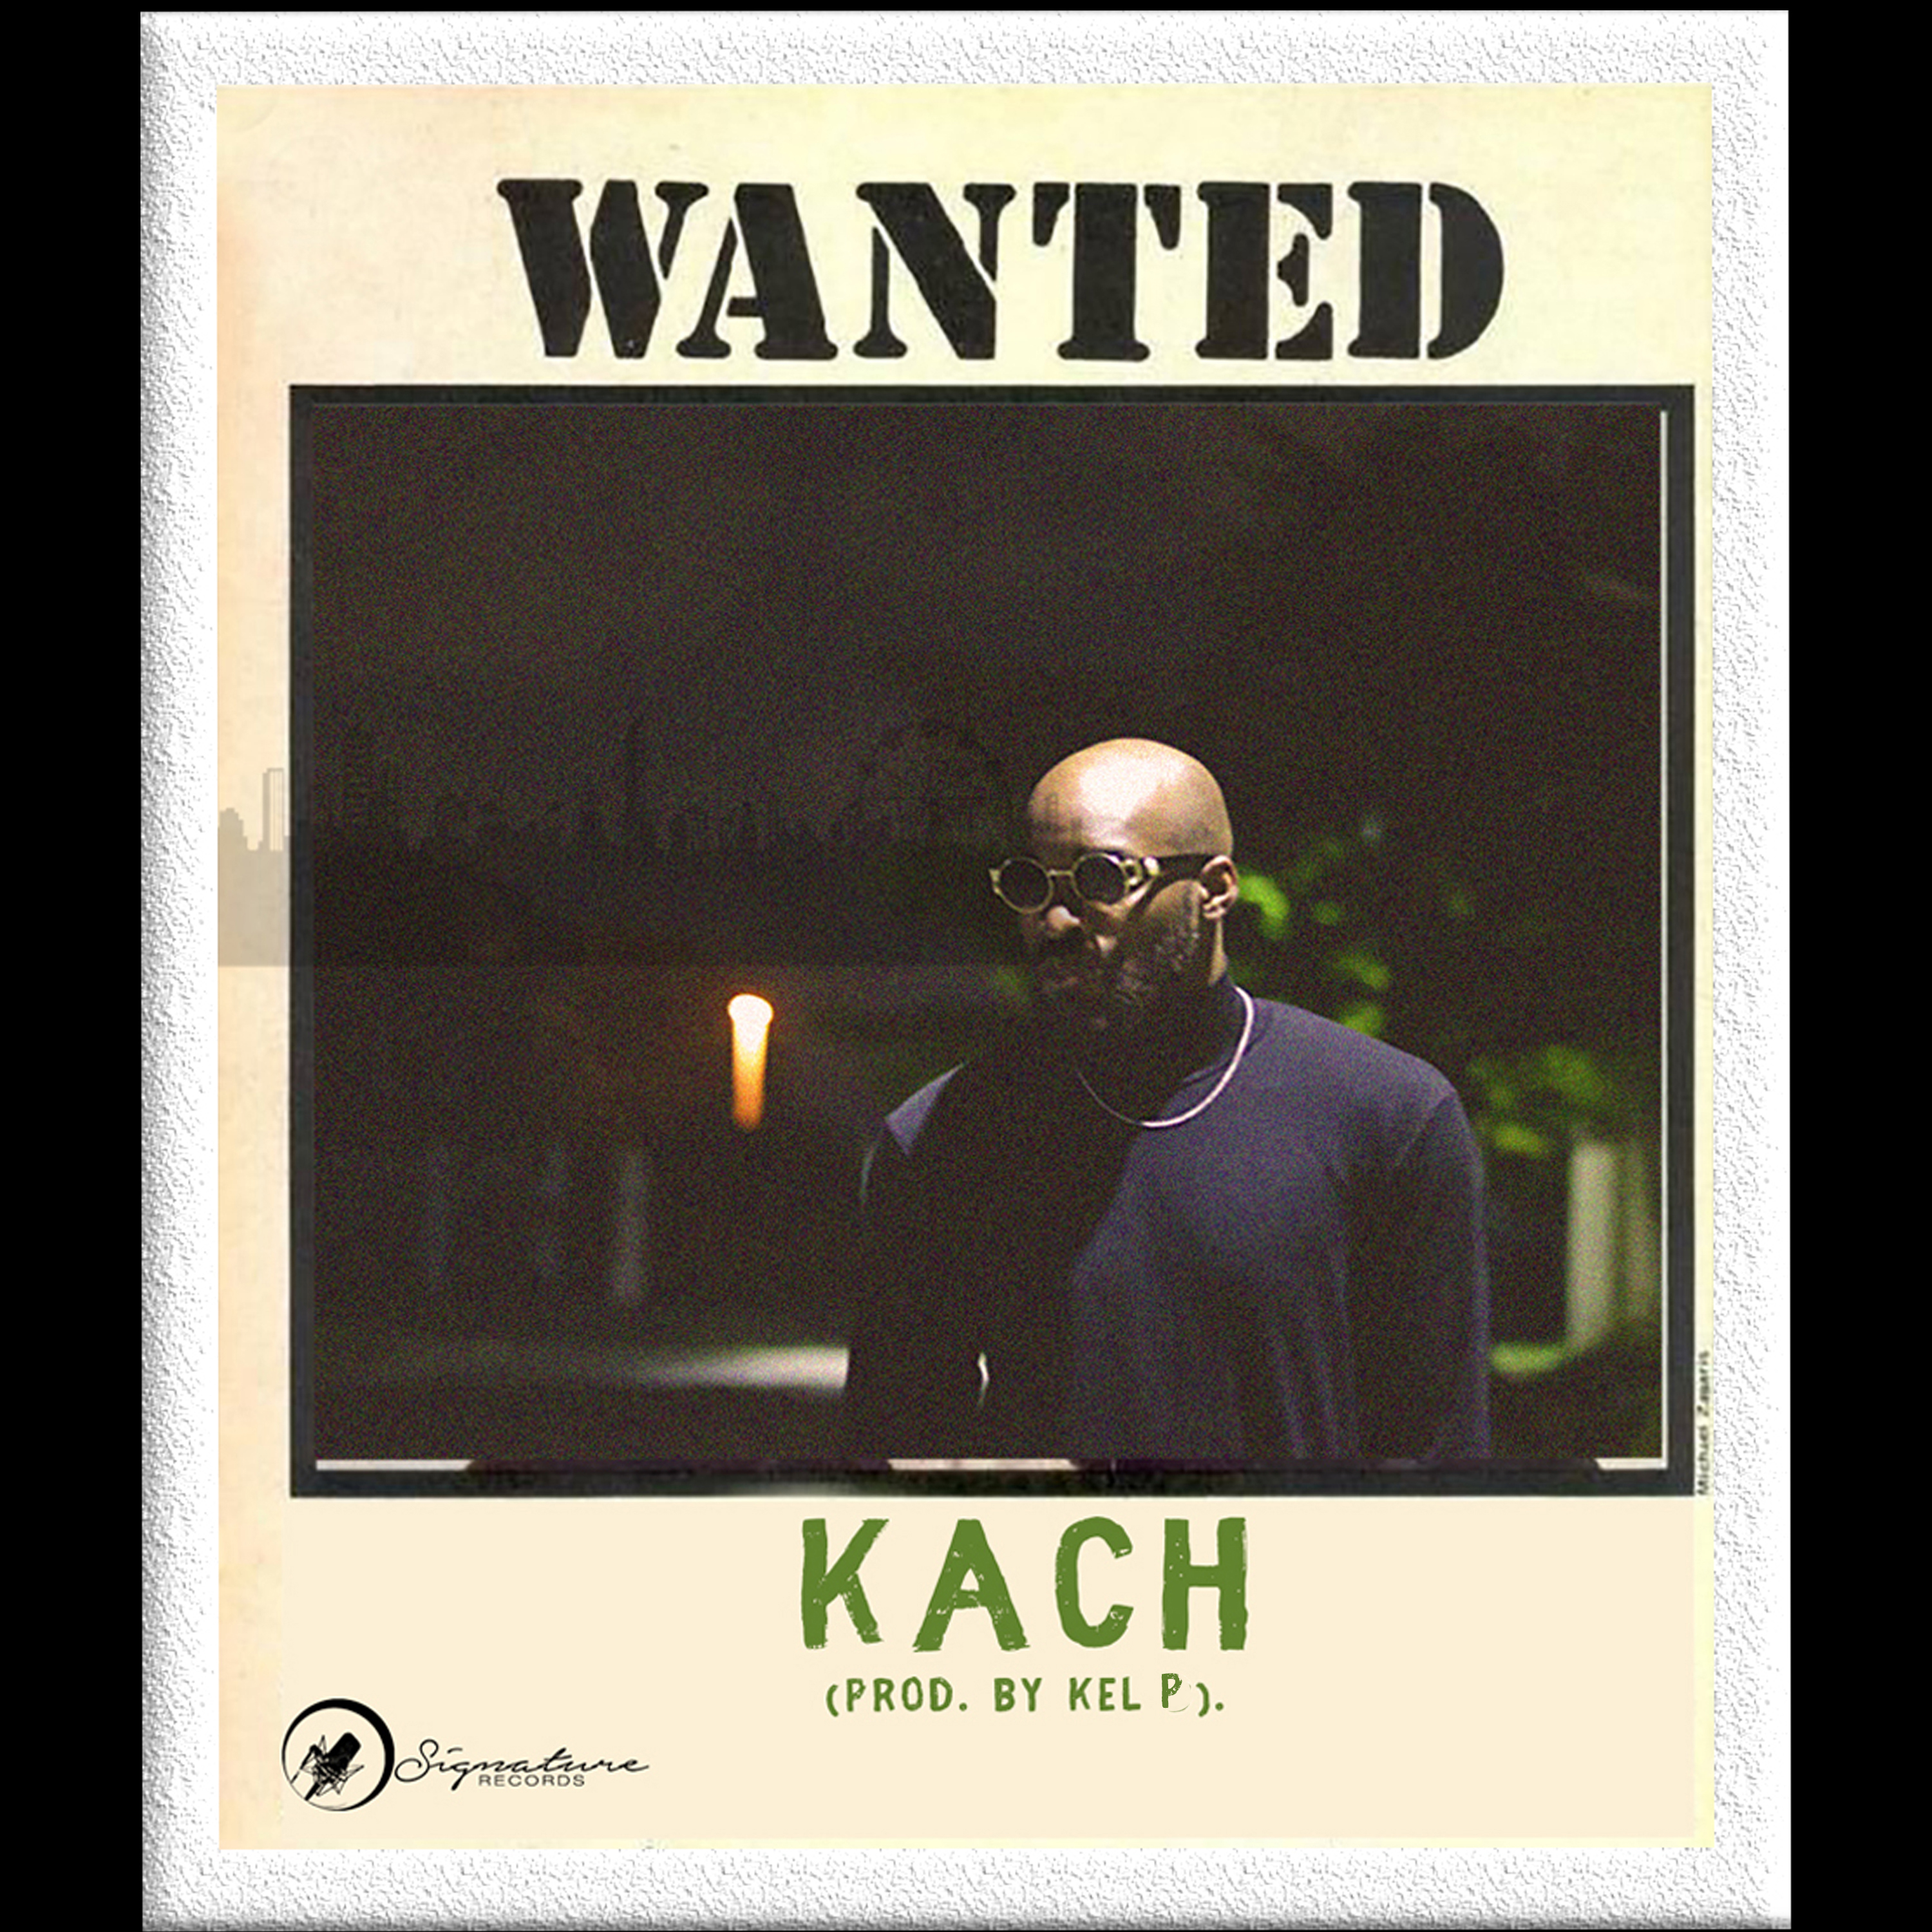 Kach - Wanted (Kel P)